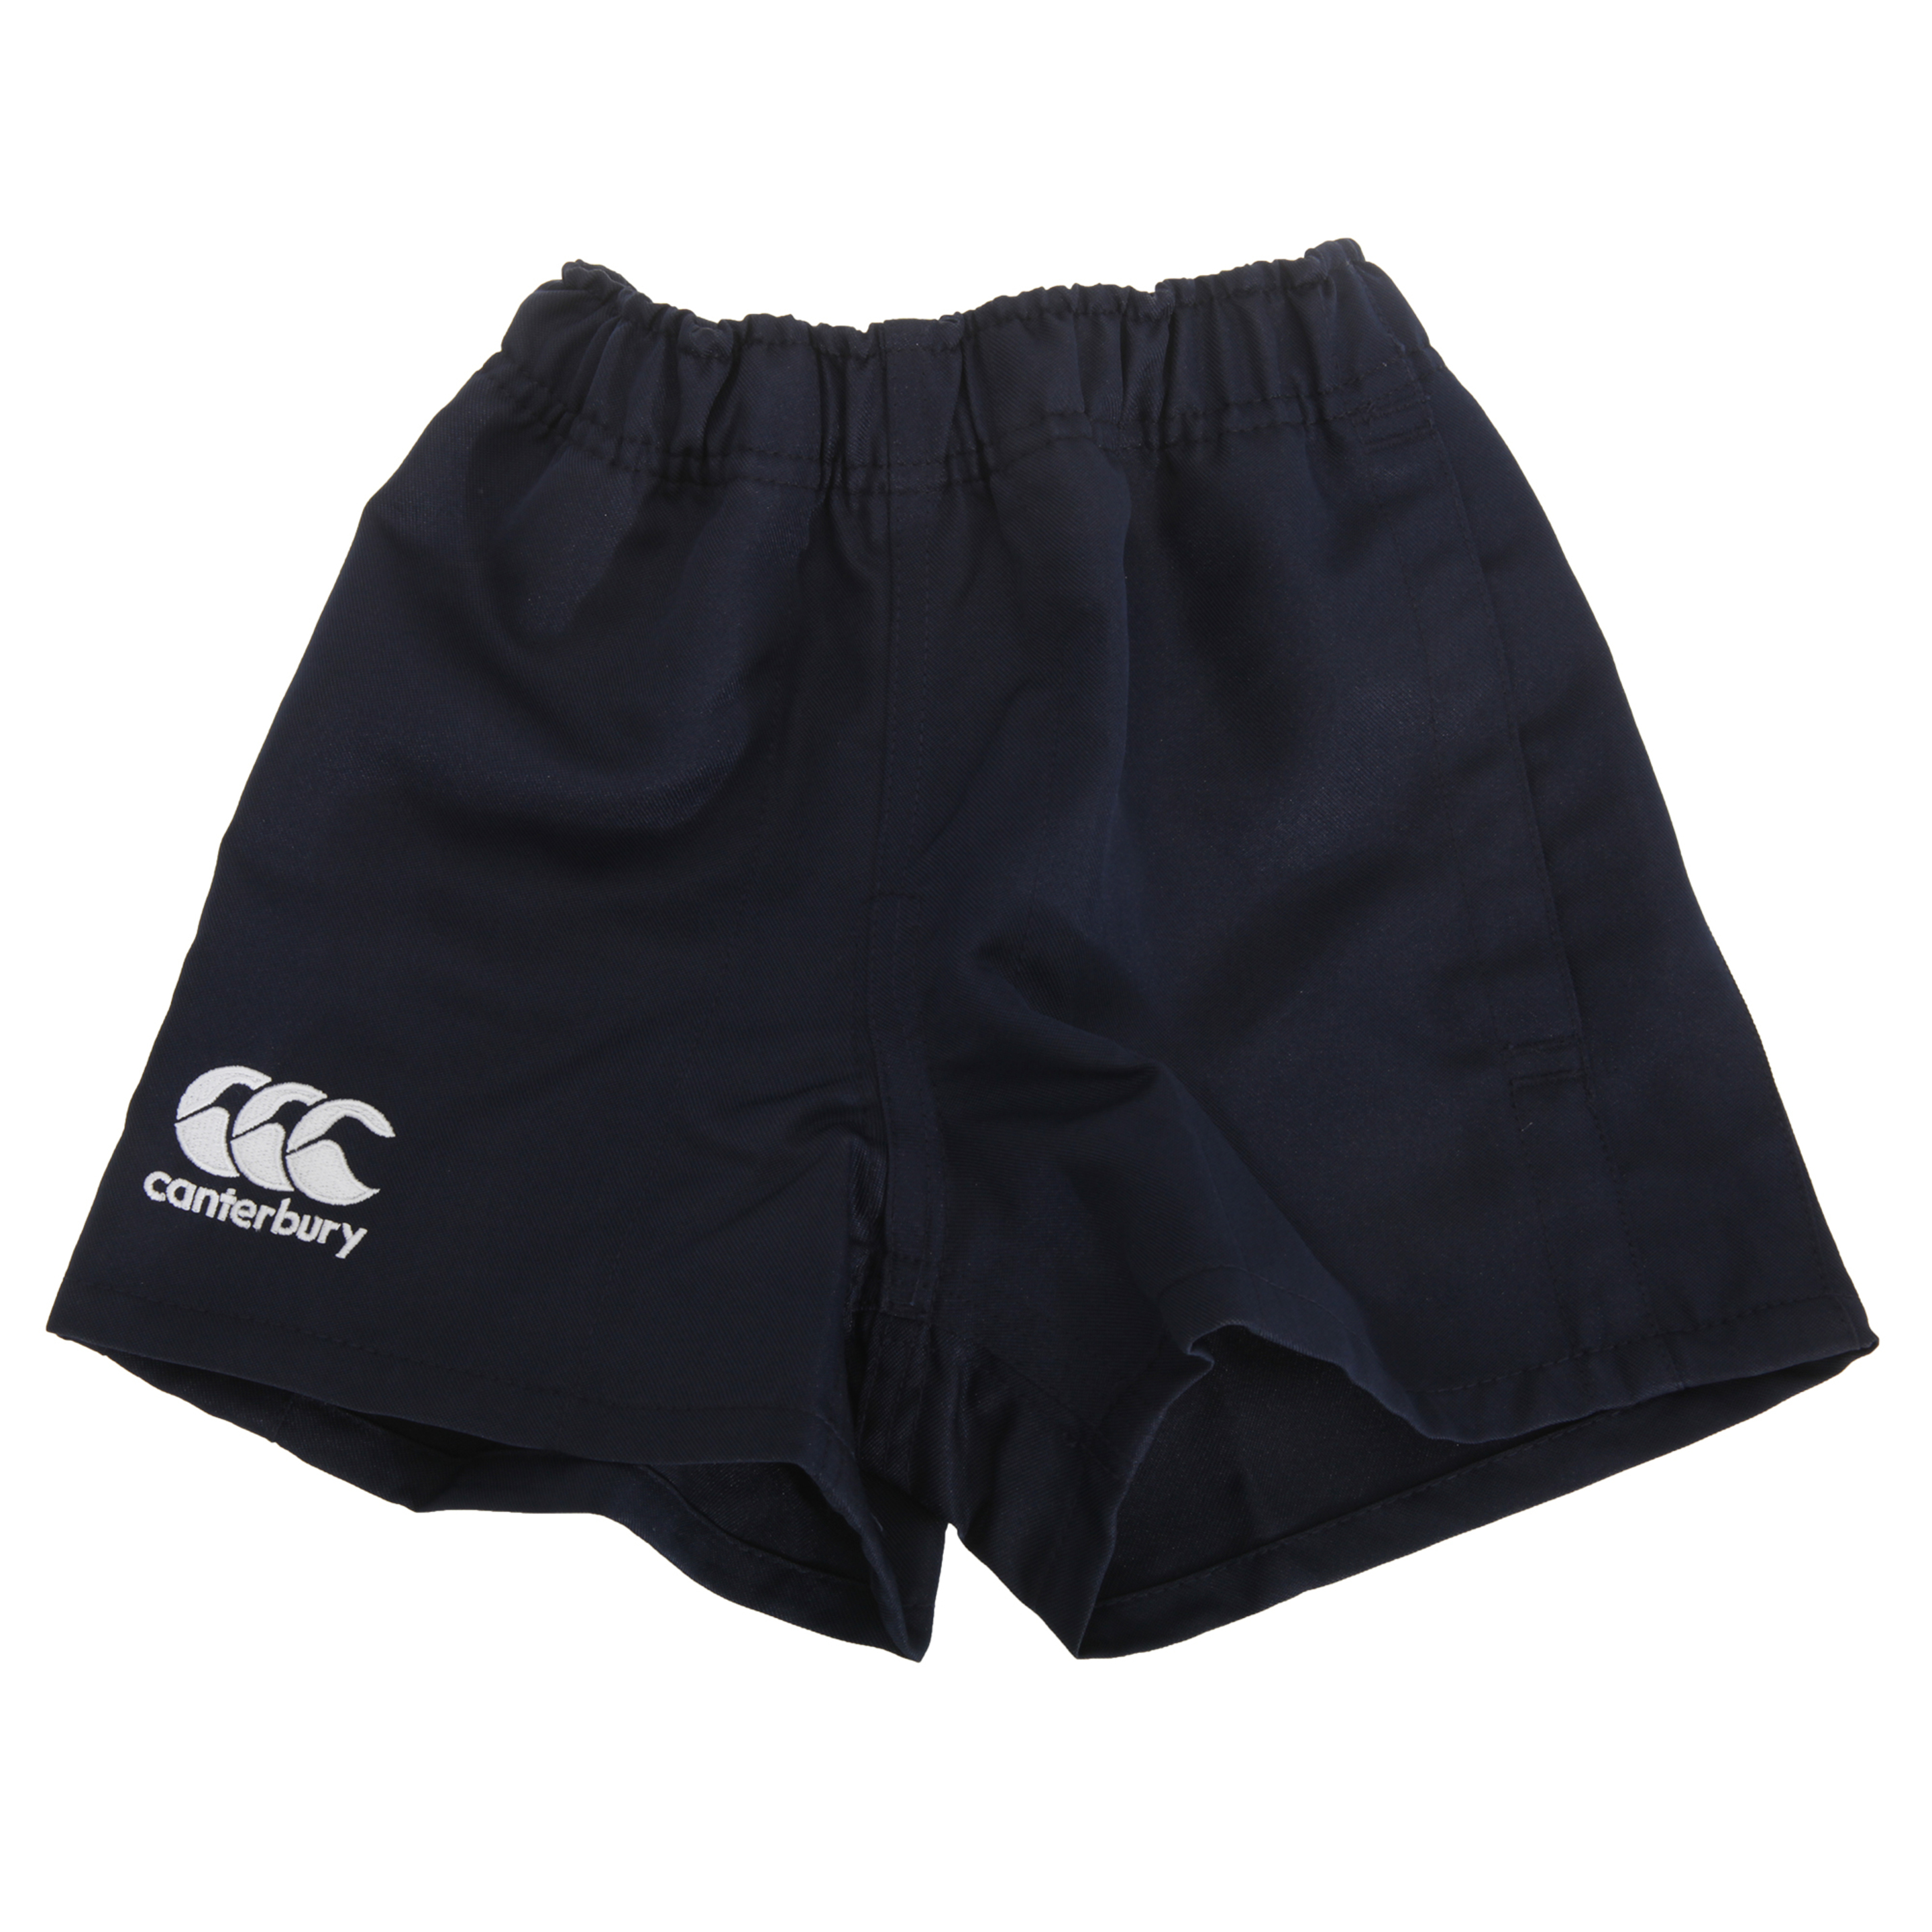 Canterbury - Pantalones Cortos De Deporte Elásticos Modelo Professional Niños (Azul Marino)